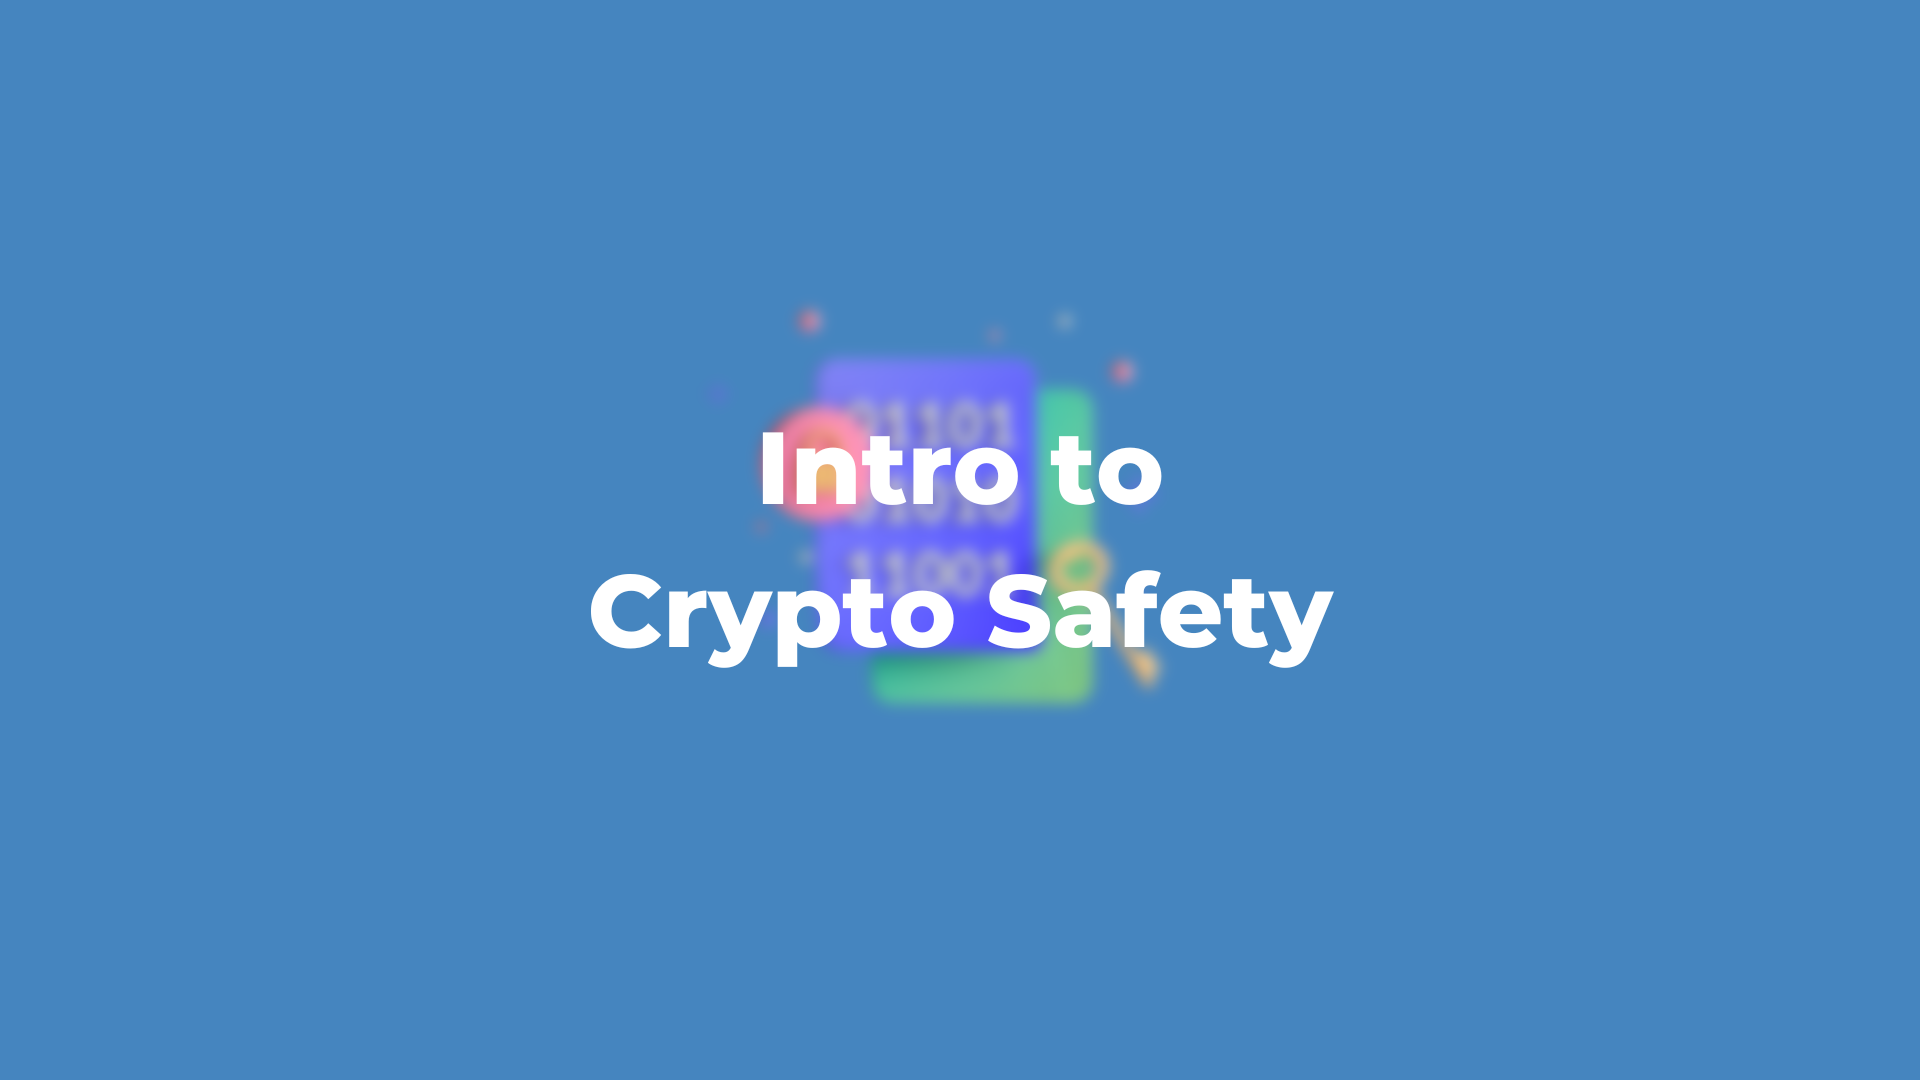 Intro to Crypto Safety